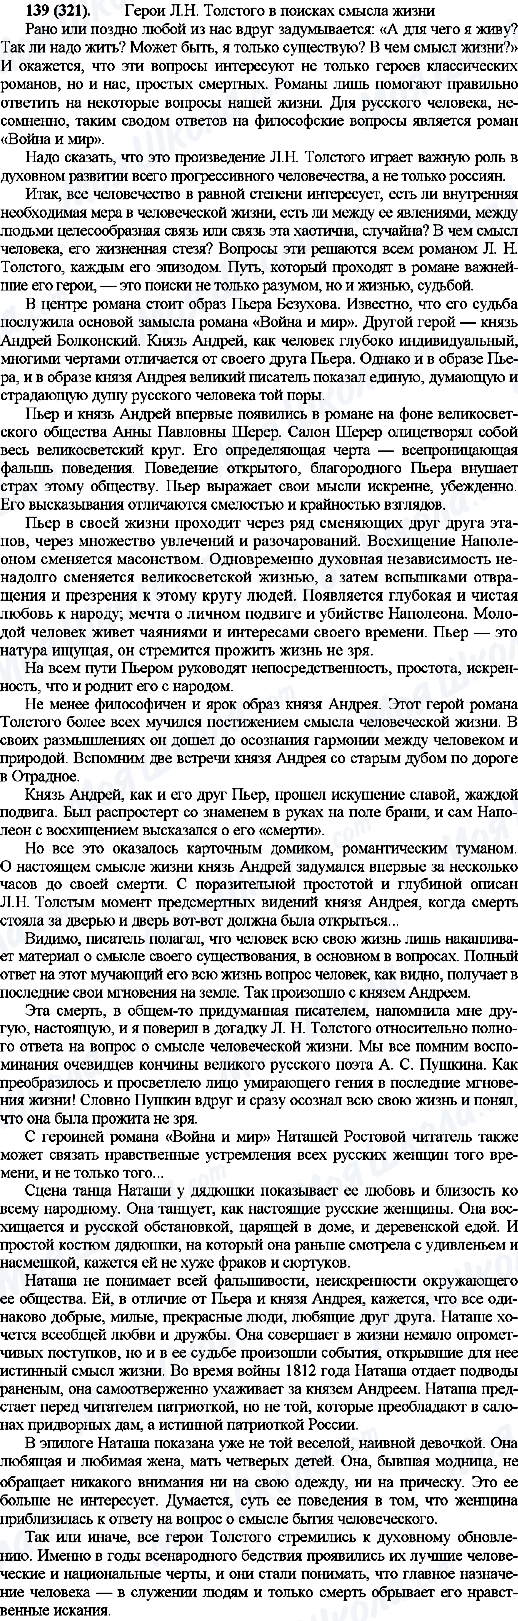 ГДЗ Русский язык 10 класс страница 139(321)